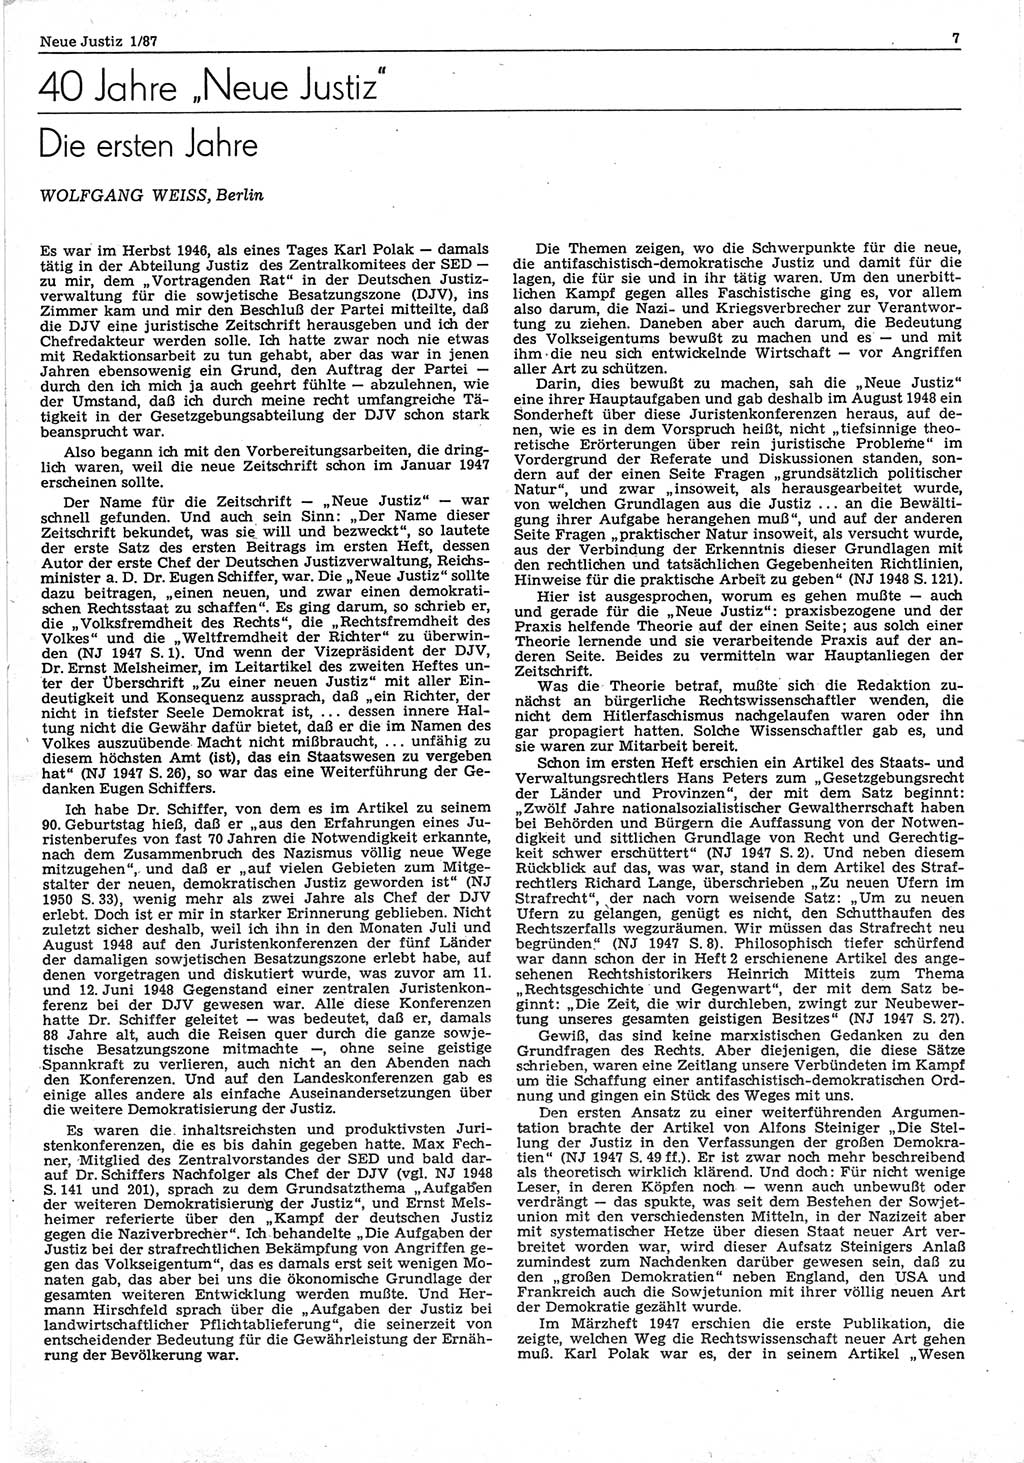 Neue Justiz (NJ), Zeitschrift für sozialistisches Recht und Gesetzlichkeit [Deutsche Demokratische Republik (DDR)], 41. Jahrgang 1987, Seite 7 (NJ DDR 1987, S. 7)